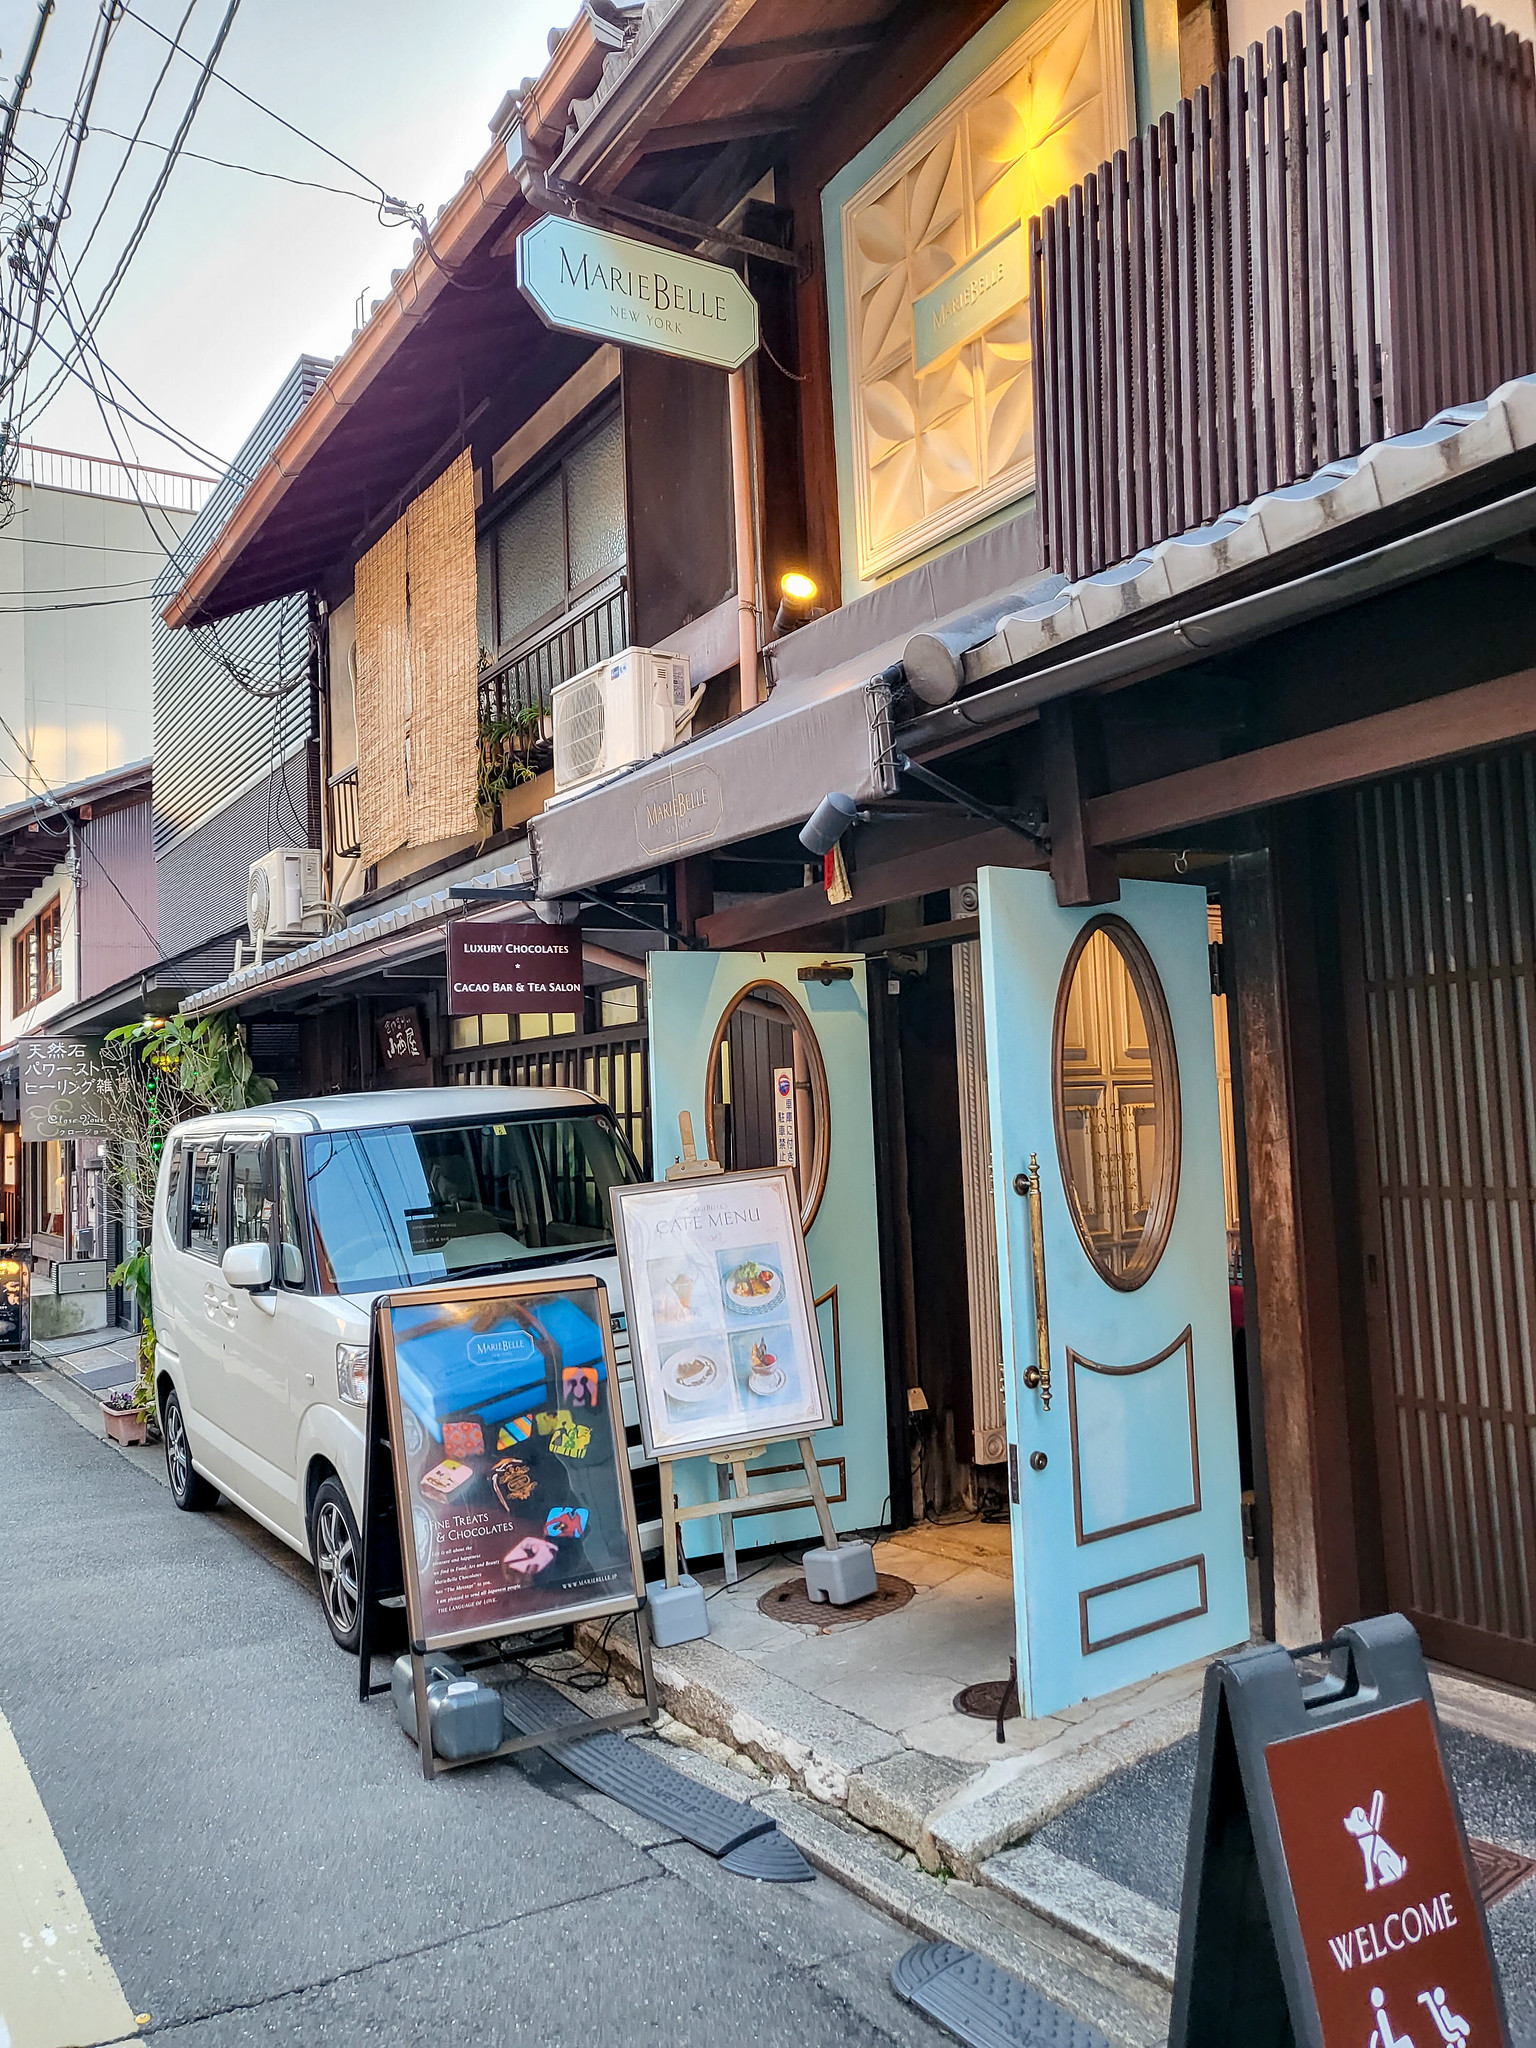 チョコレートとカフェと建物 京都三条通りを散策 #京都 #チョコ #カフェ